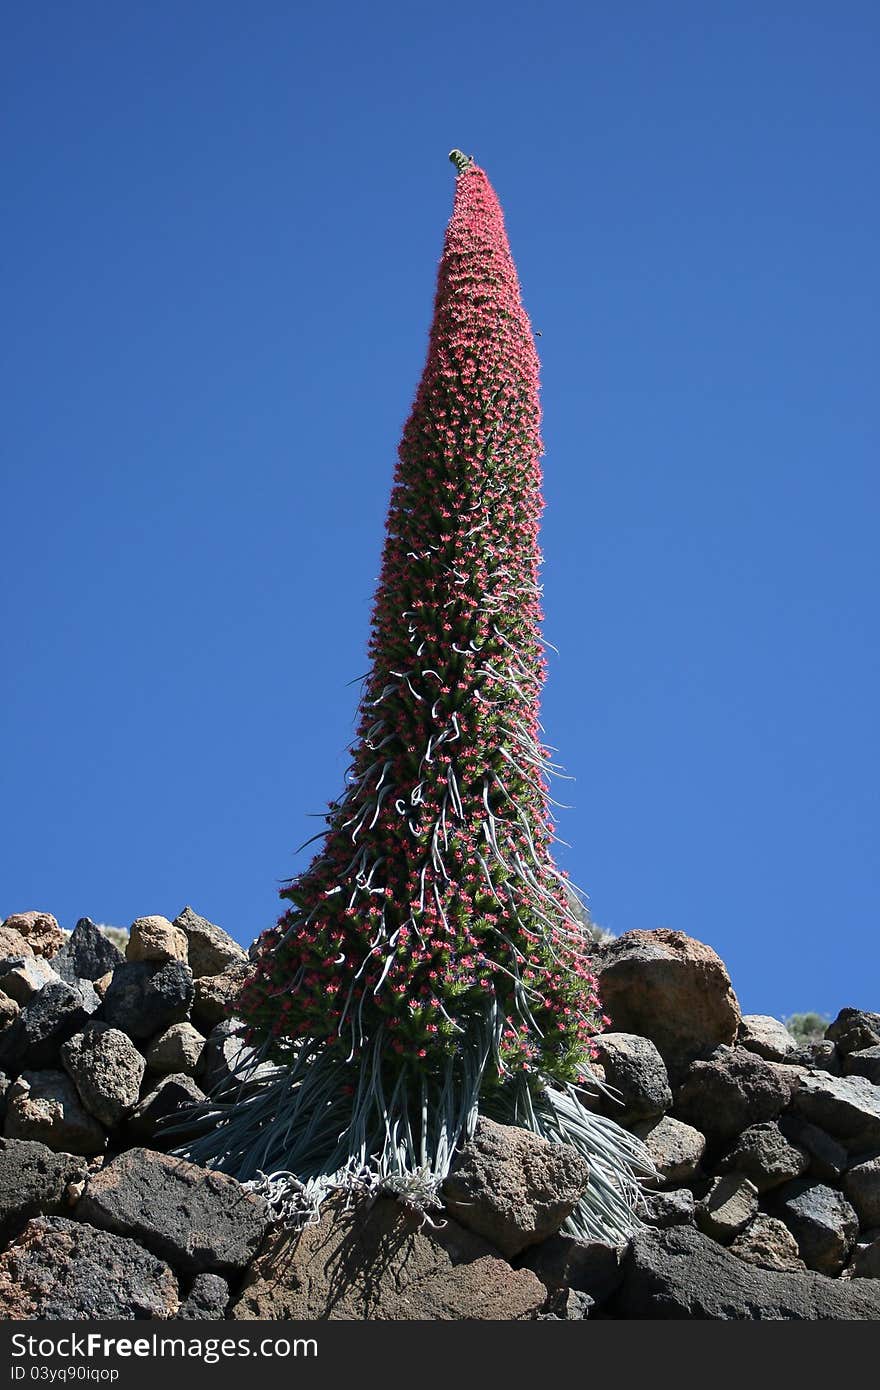 Solitary flowering endemic plant in desert scenery. Solitary flowering endemic plant in desert scenery